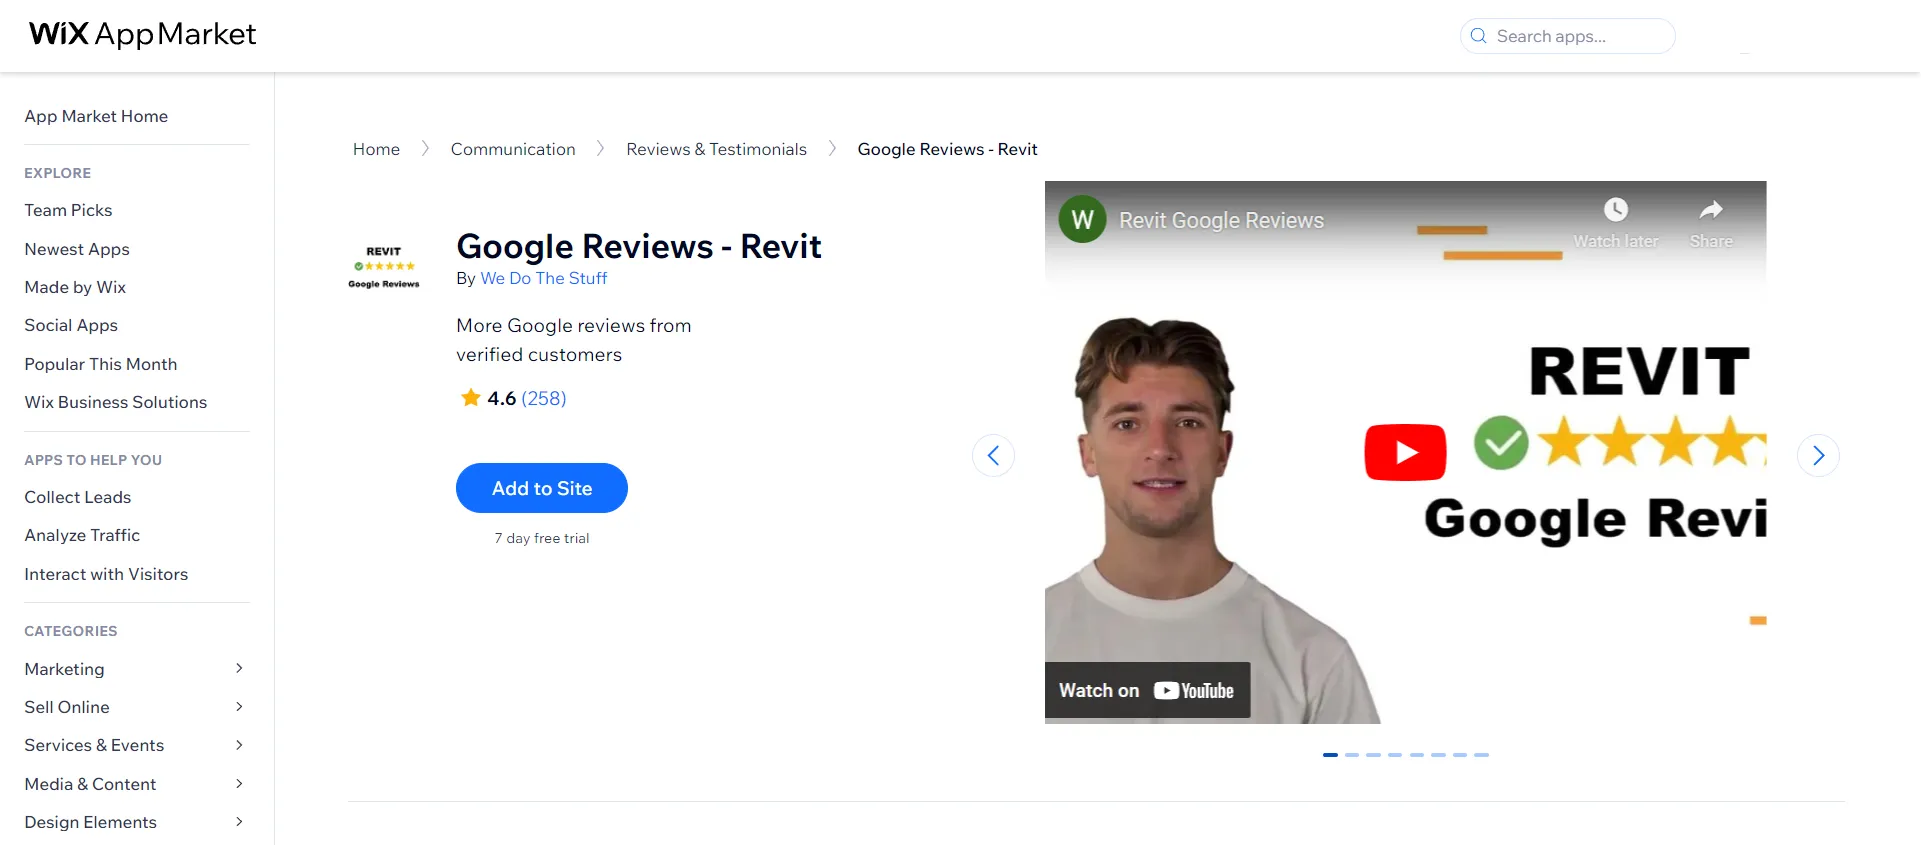 Google Reviews - Revit